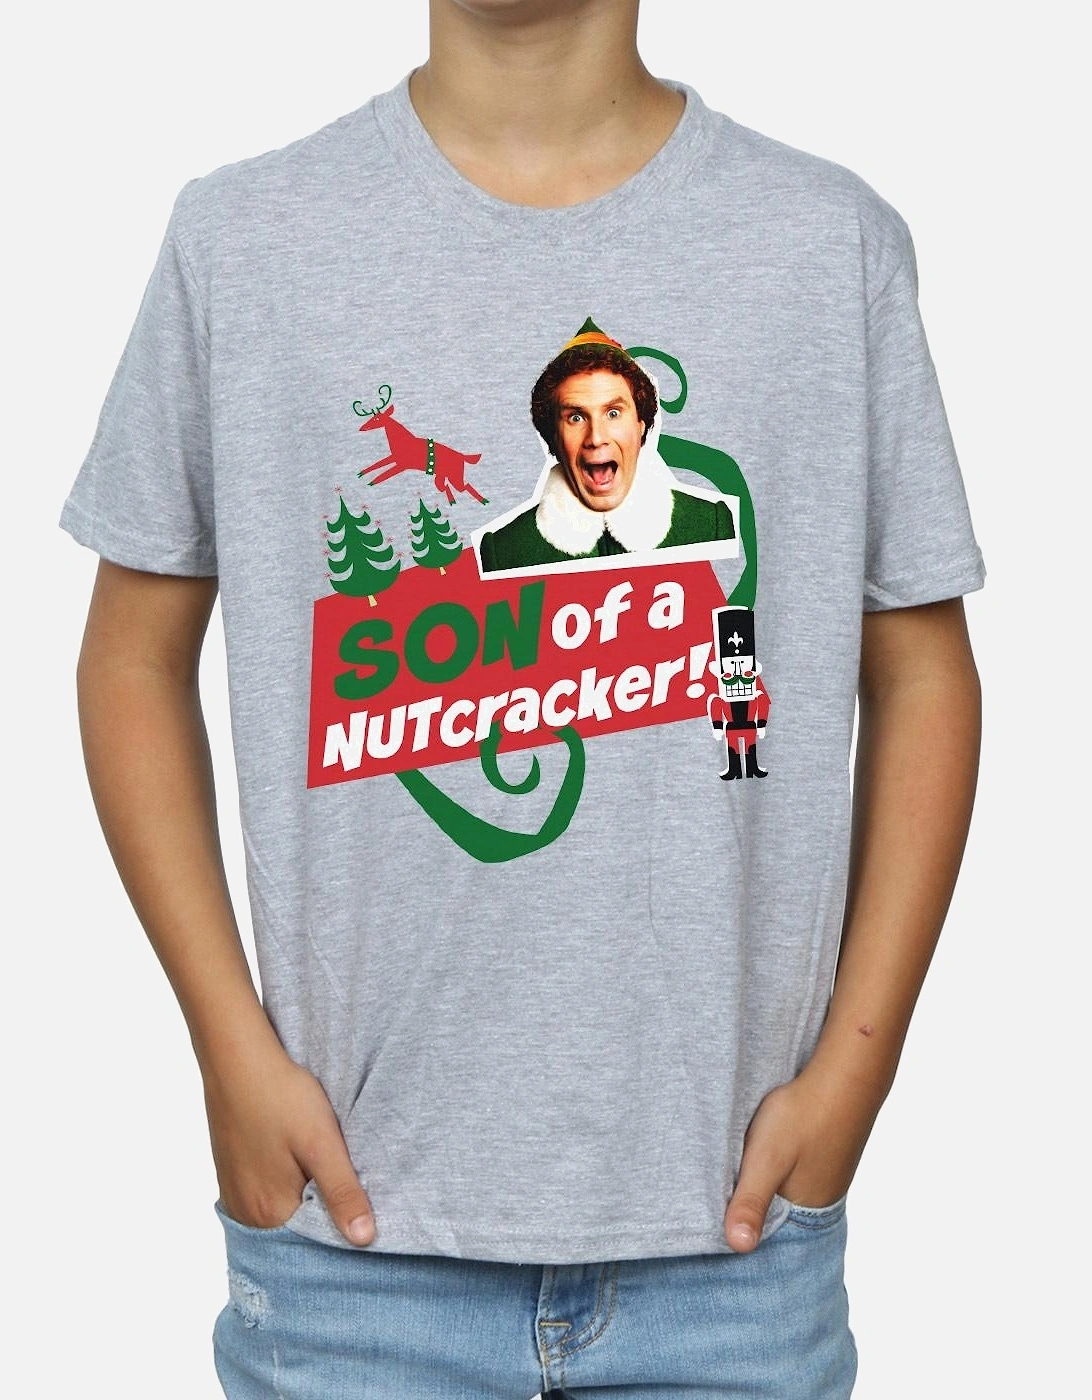 Boys Son Of A Nutcracker T-Shirt